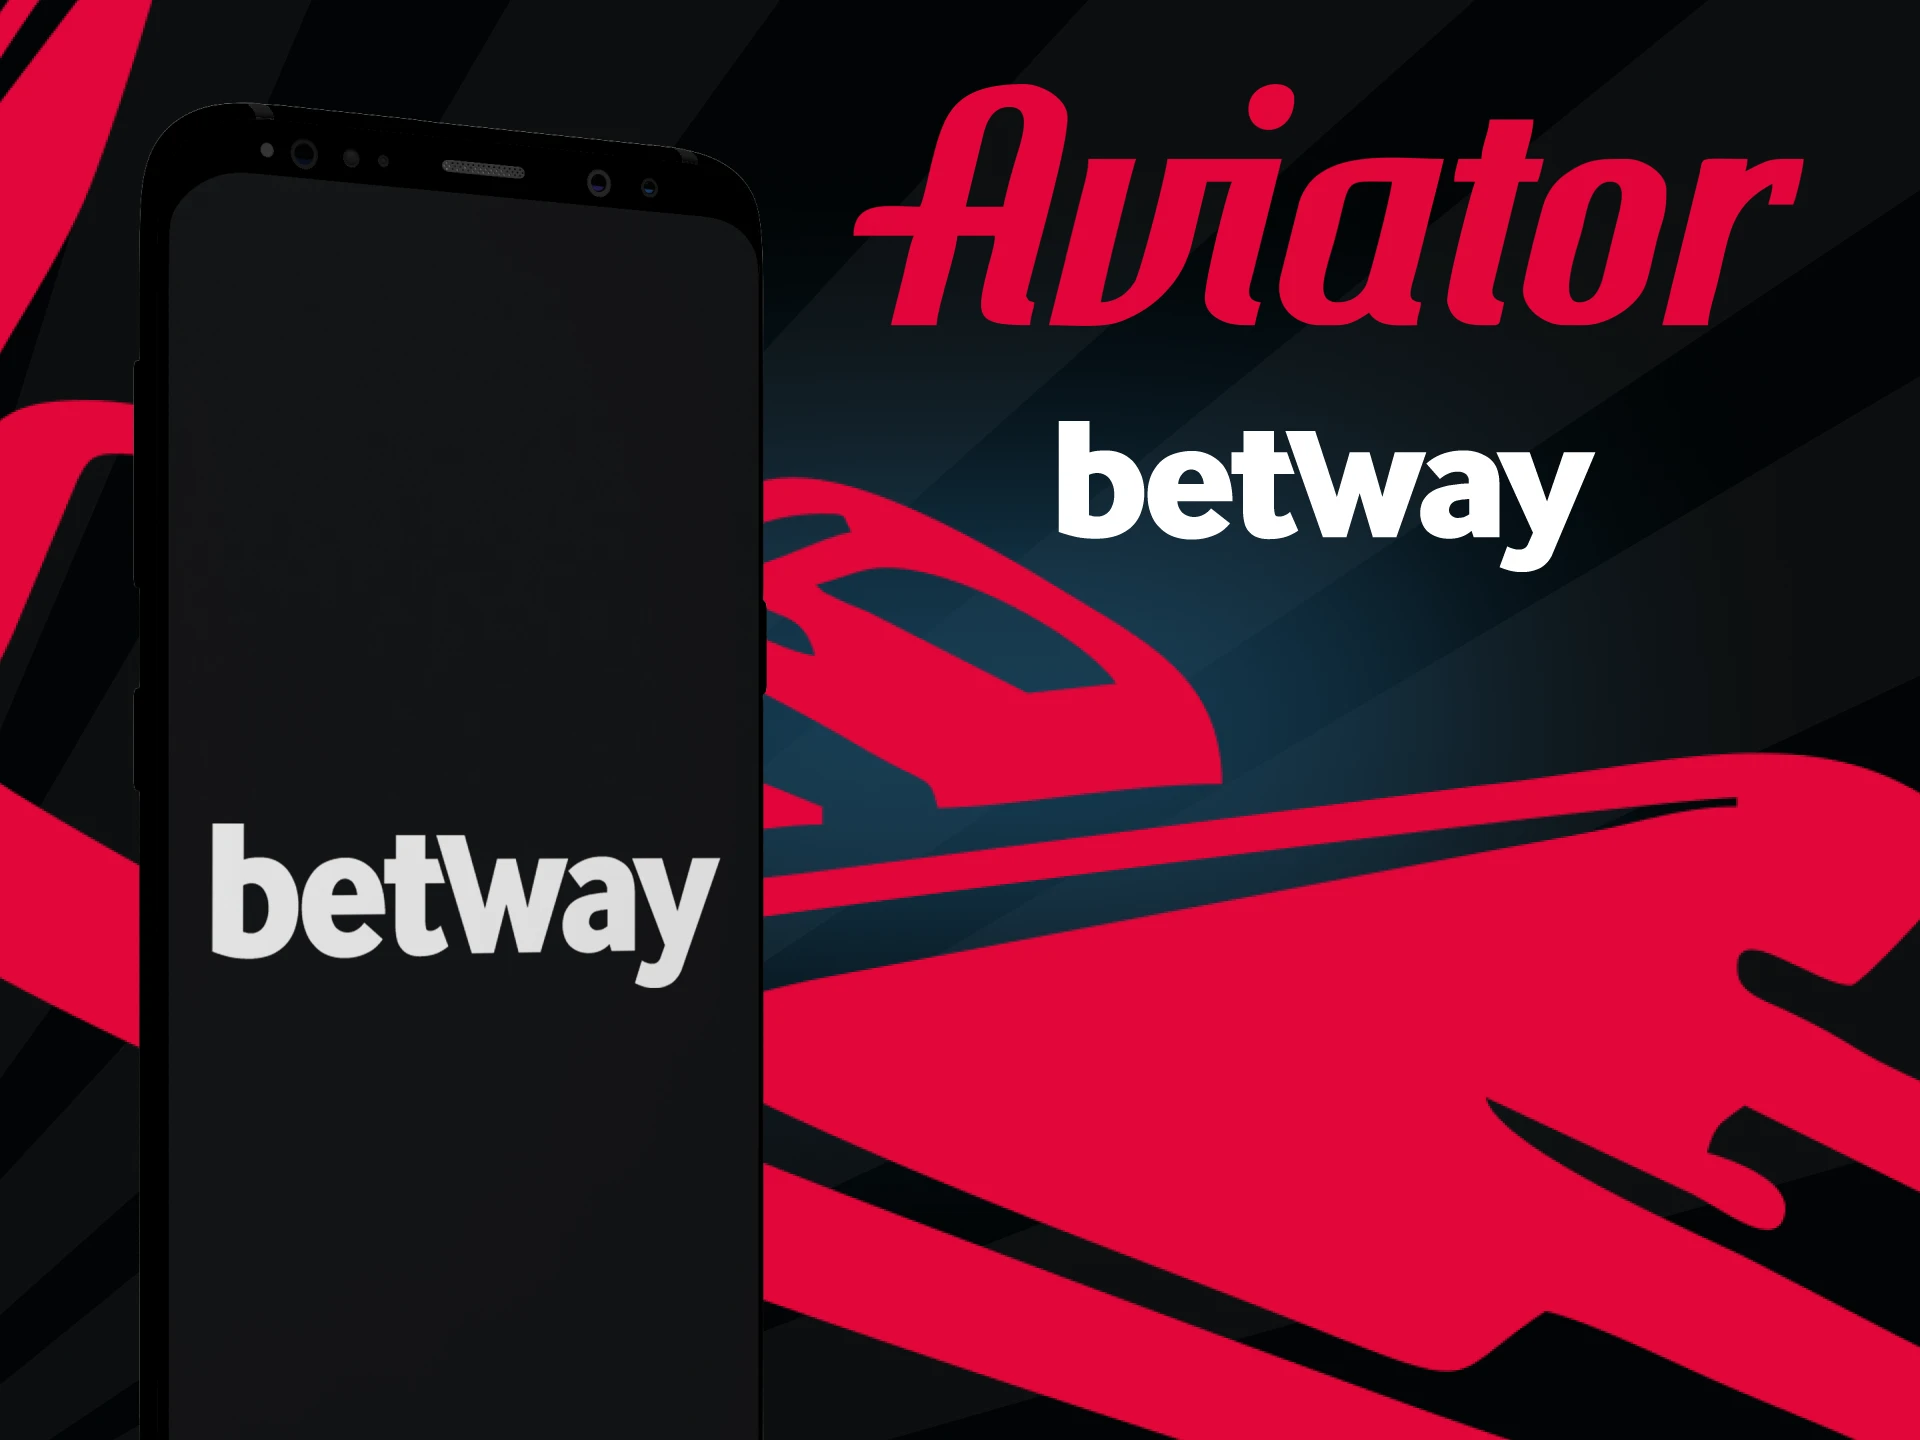 Baixe o aplicativo Betway em seu smartphone para jogar Aviator.